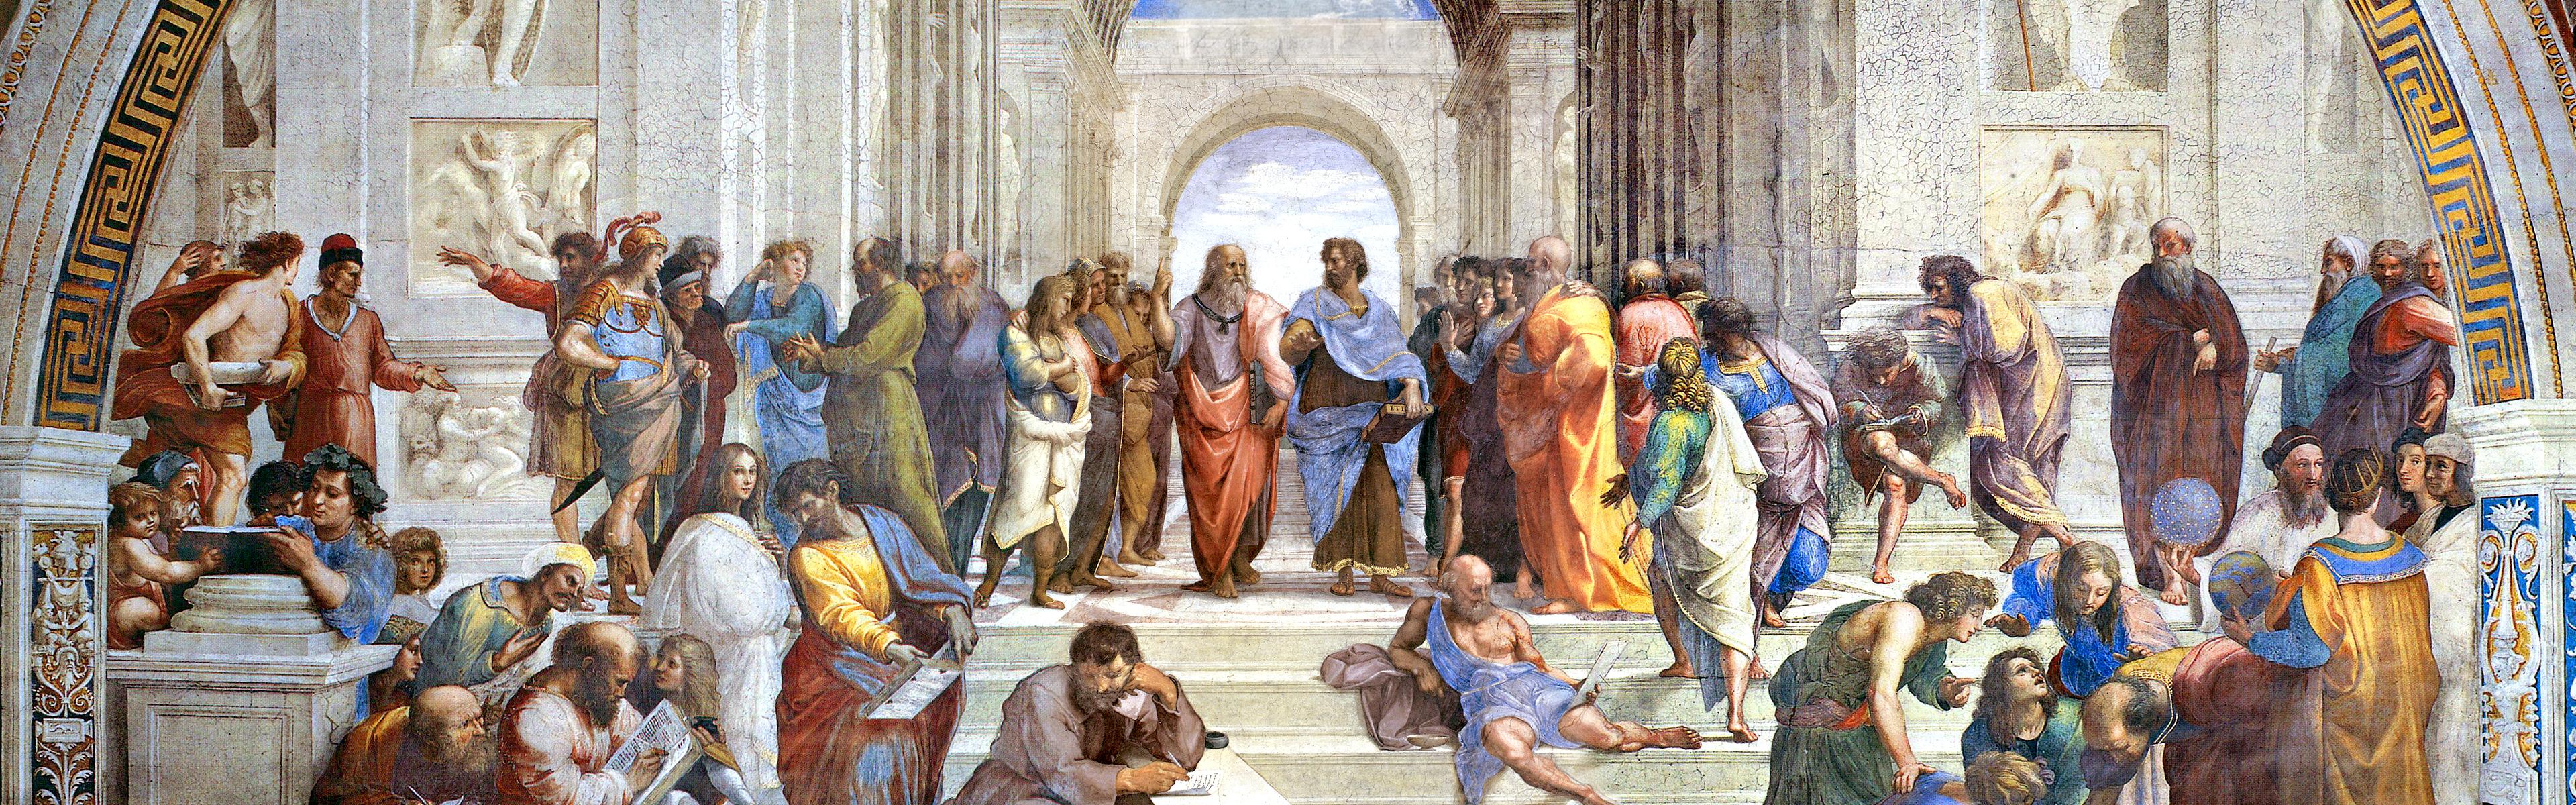 Socrates, Aristotle, The School of Athens, philosophers, Plato